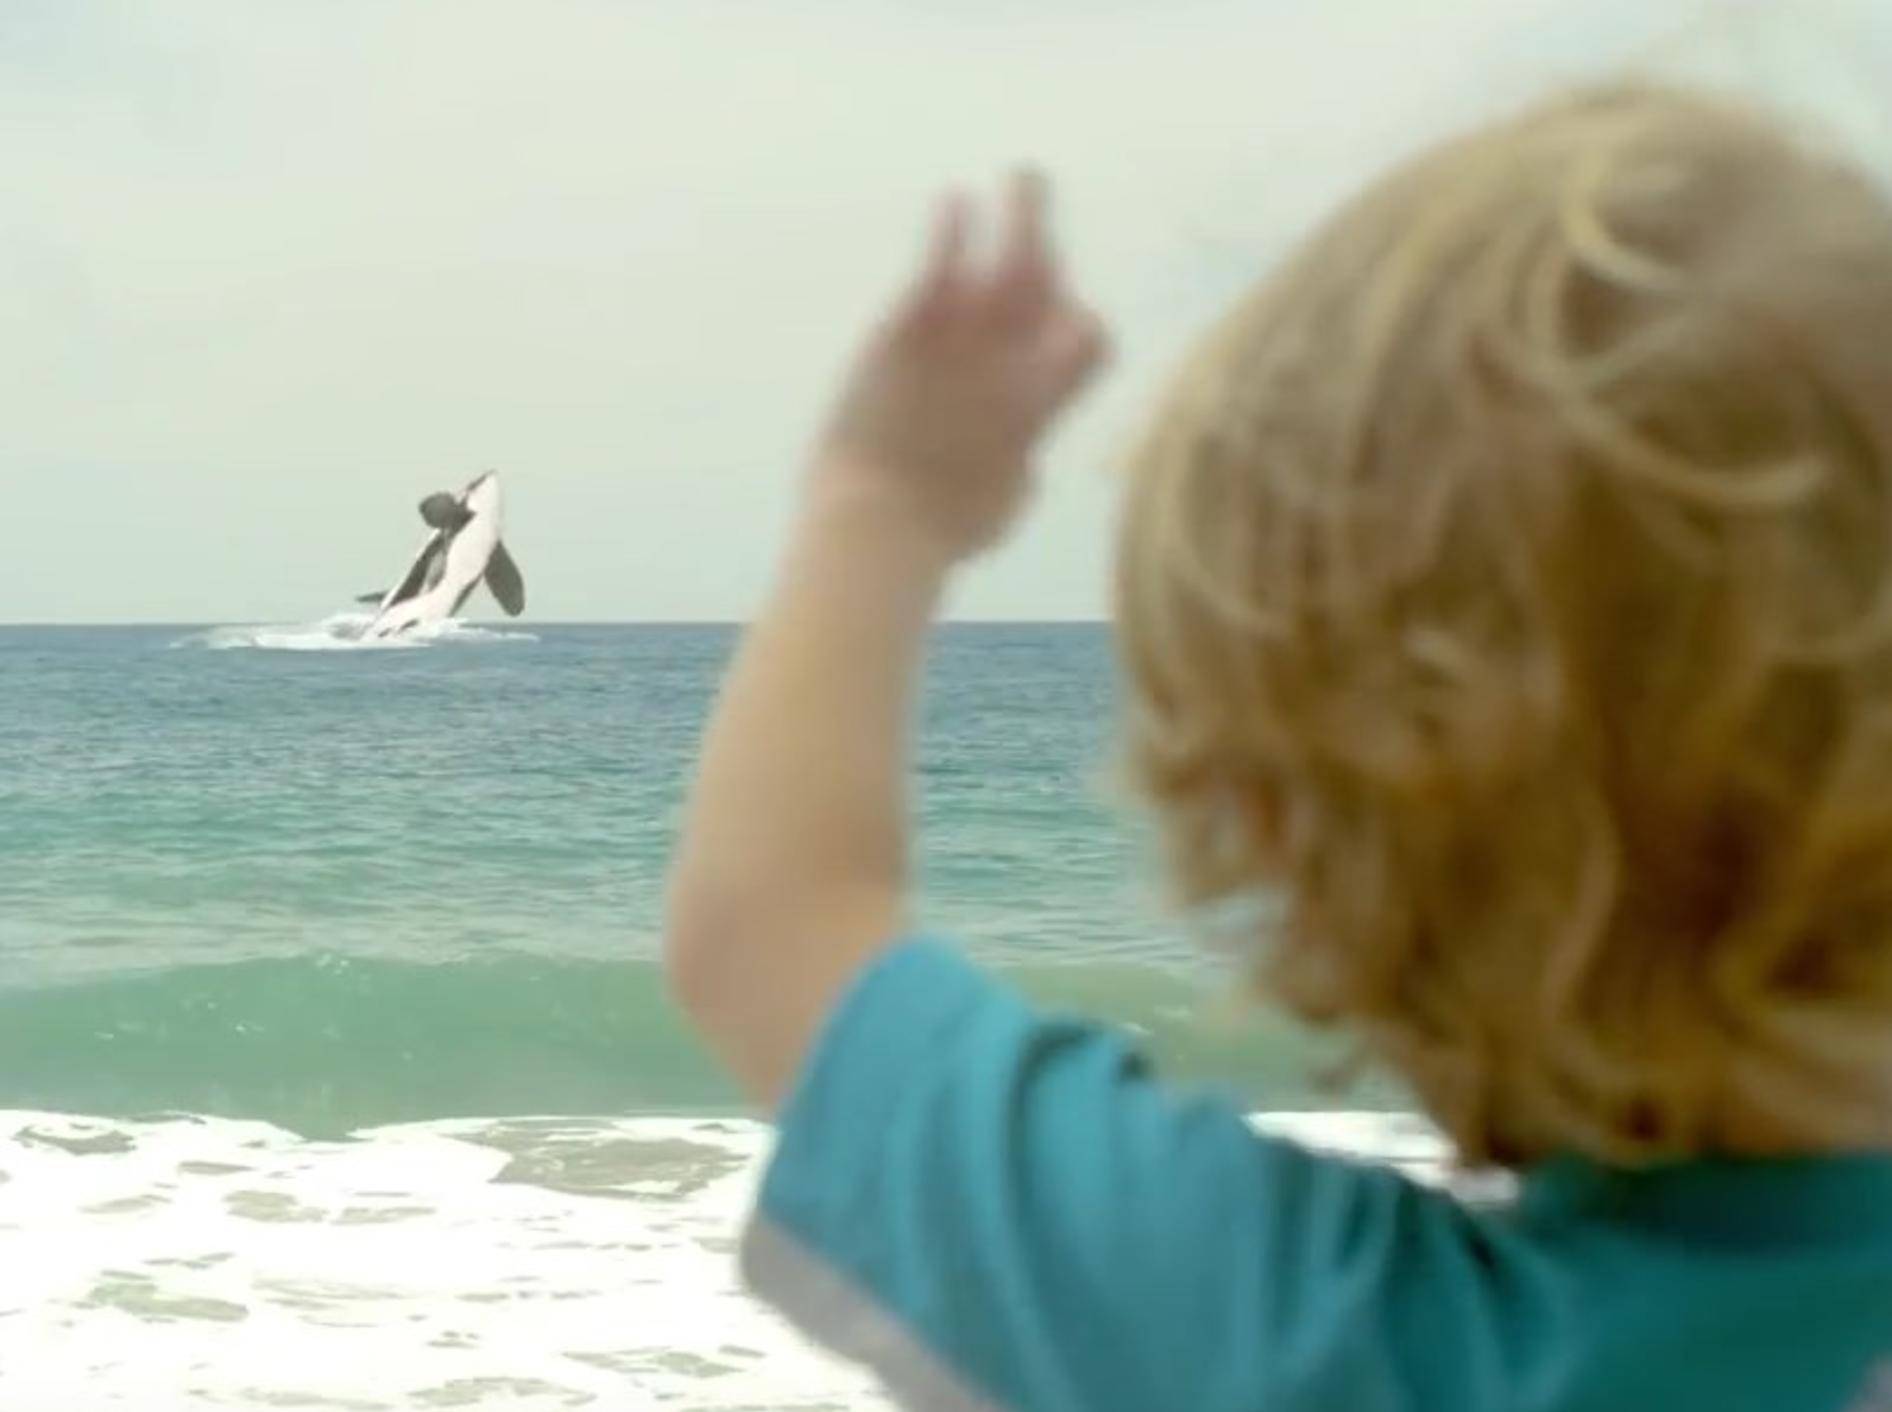 Am Ende kommt der Mini-Orca in die offene See und ist glücklich – YouTube / munchkin